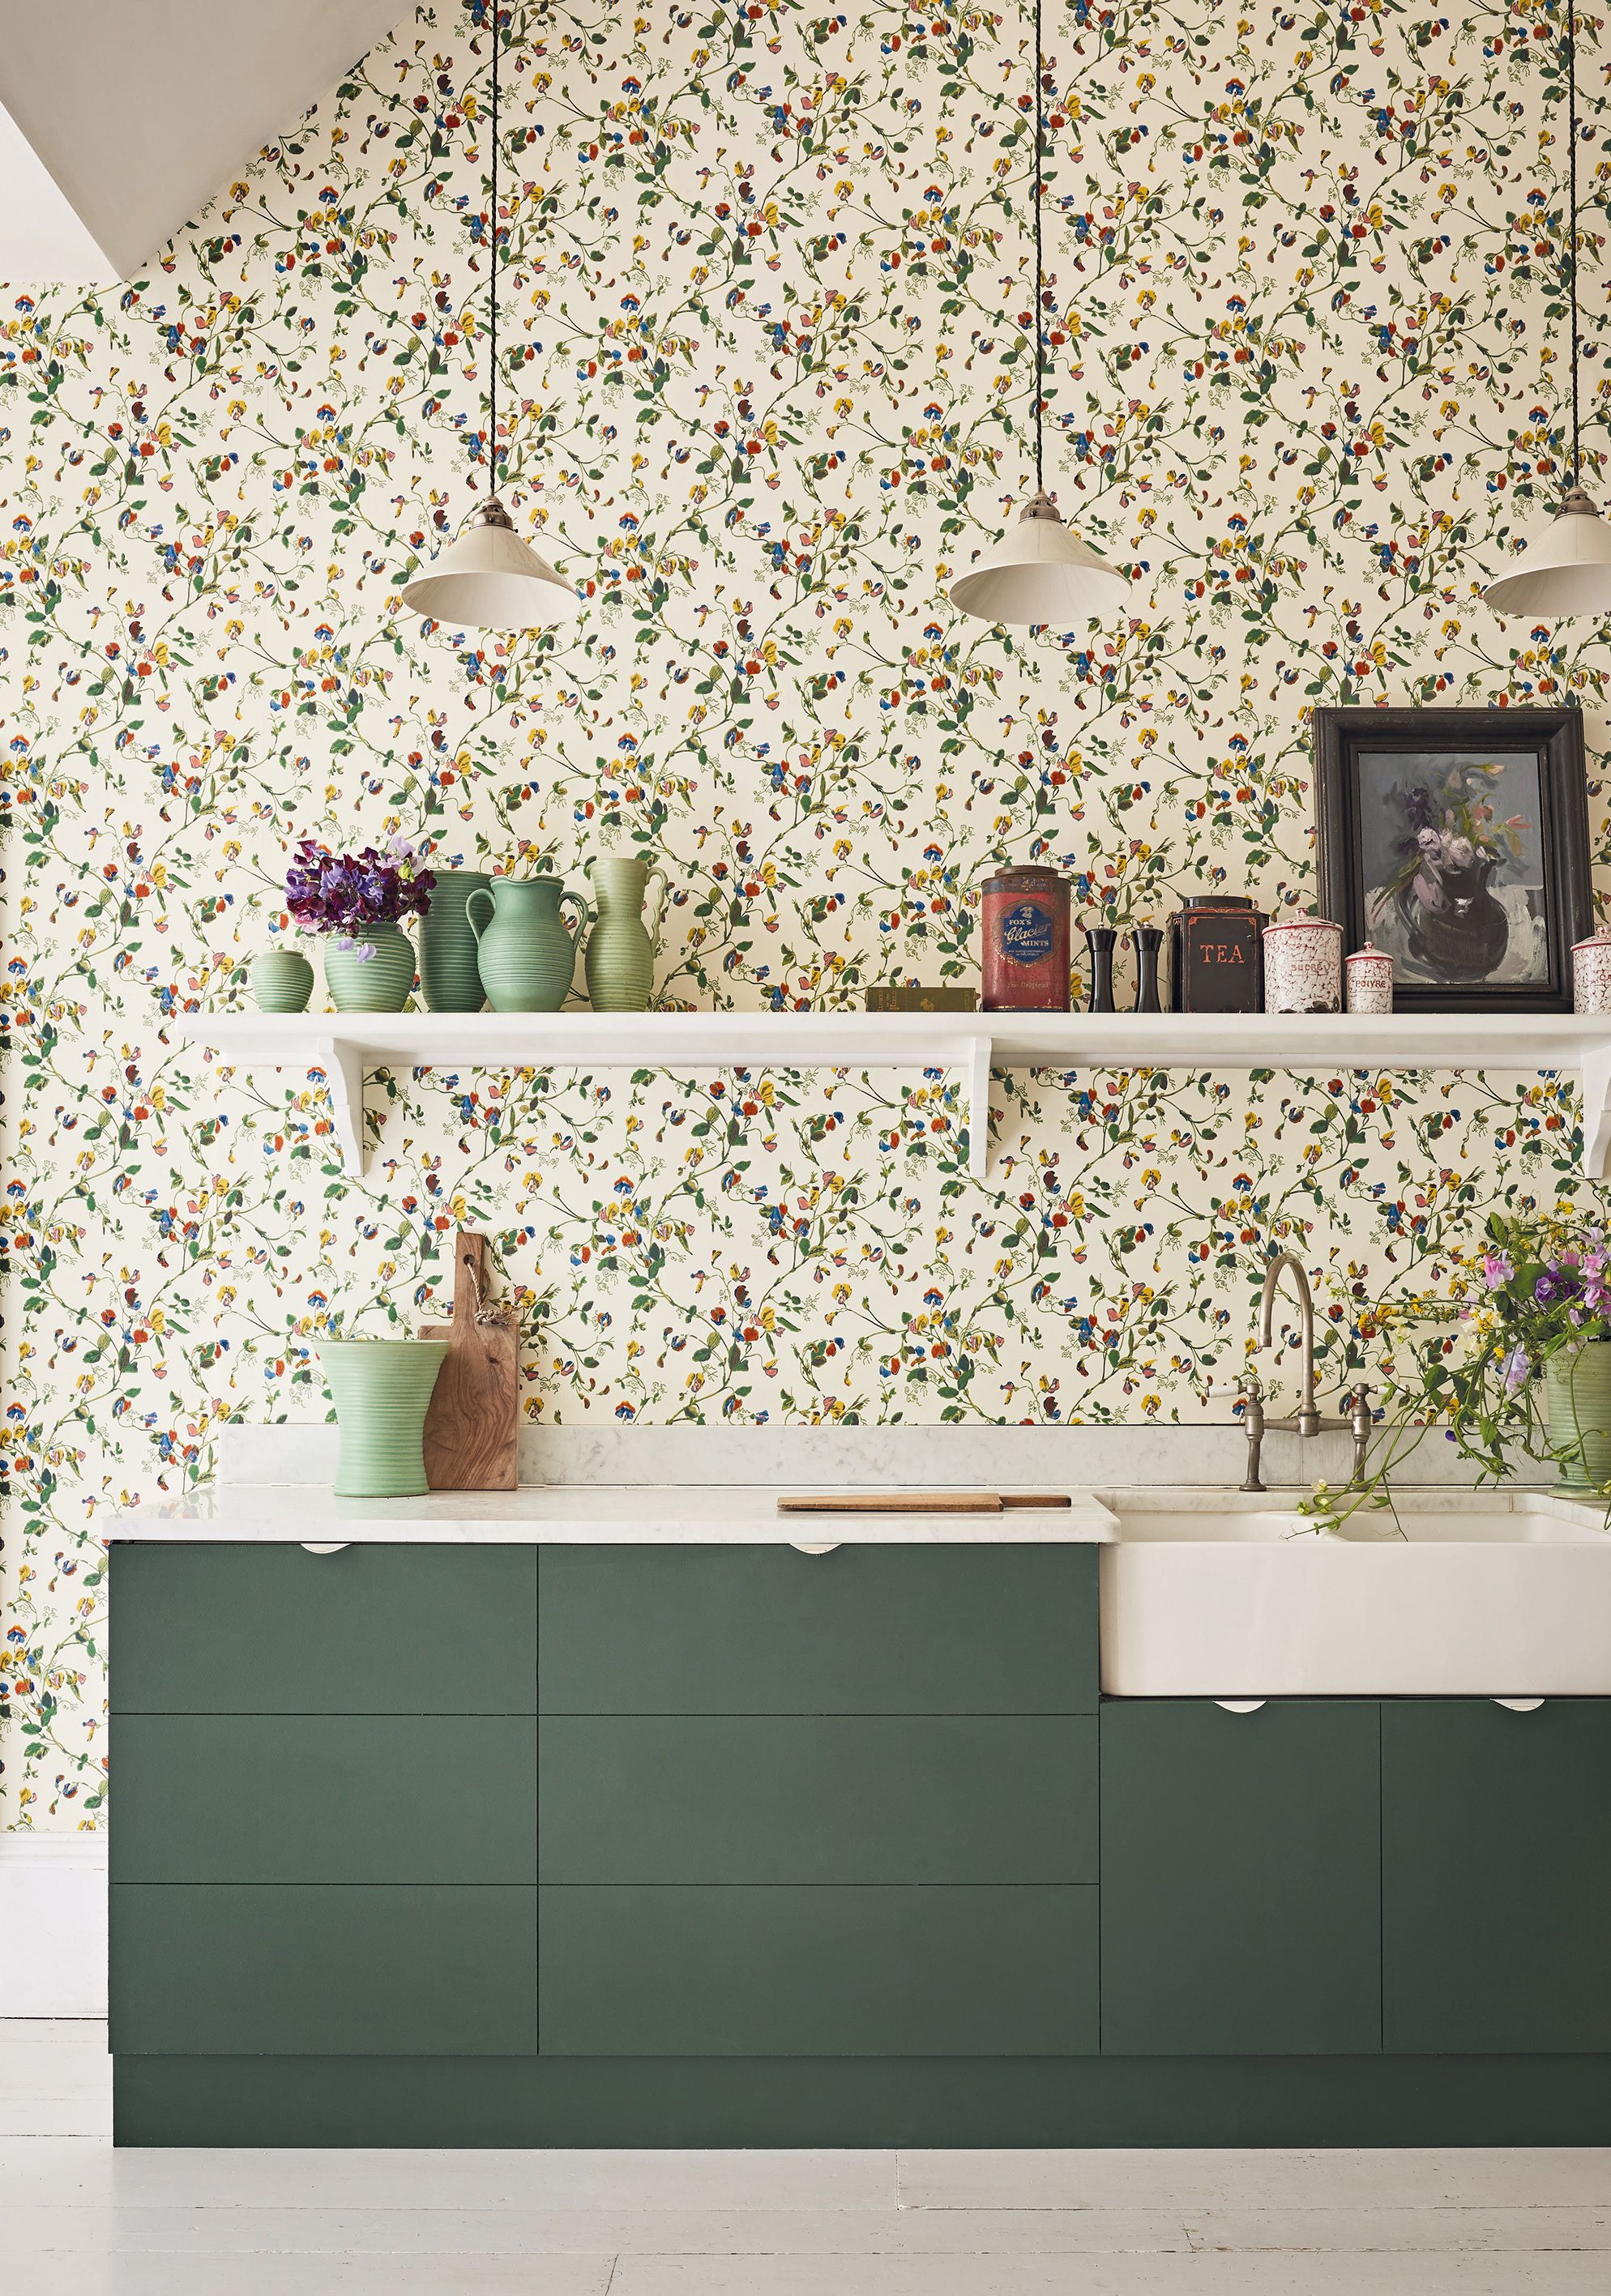 Trang trí nhà bếp bằng giấy dán tường dễ dàng, đơn giản và tiết kiệm rõ ràng so với dùng gạch ốp - Ảnh 10.